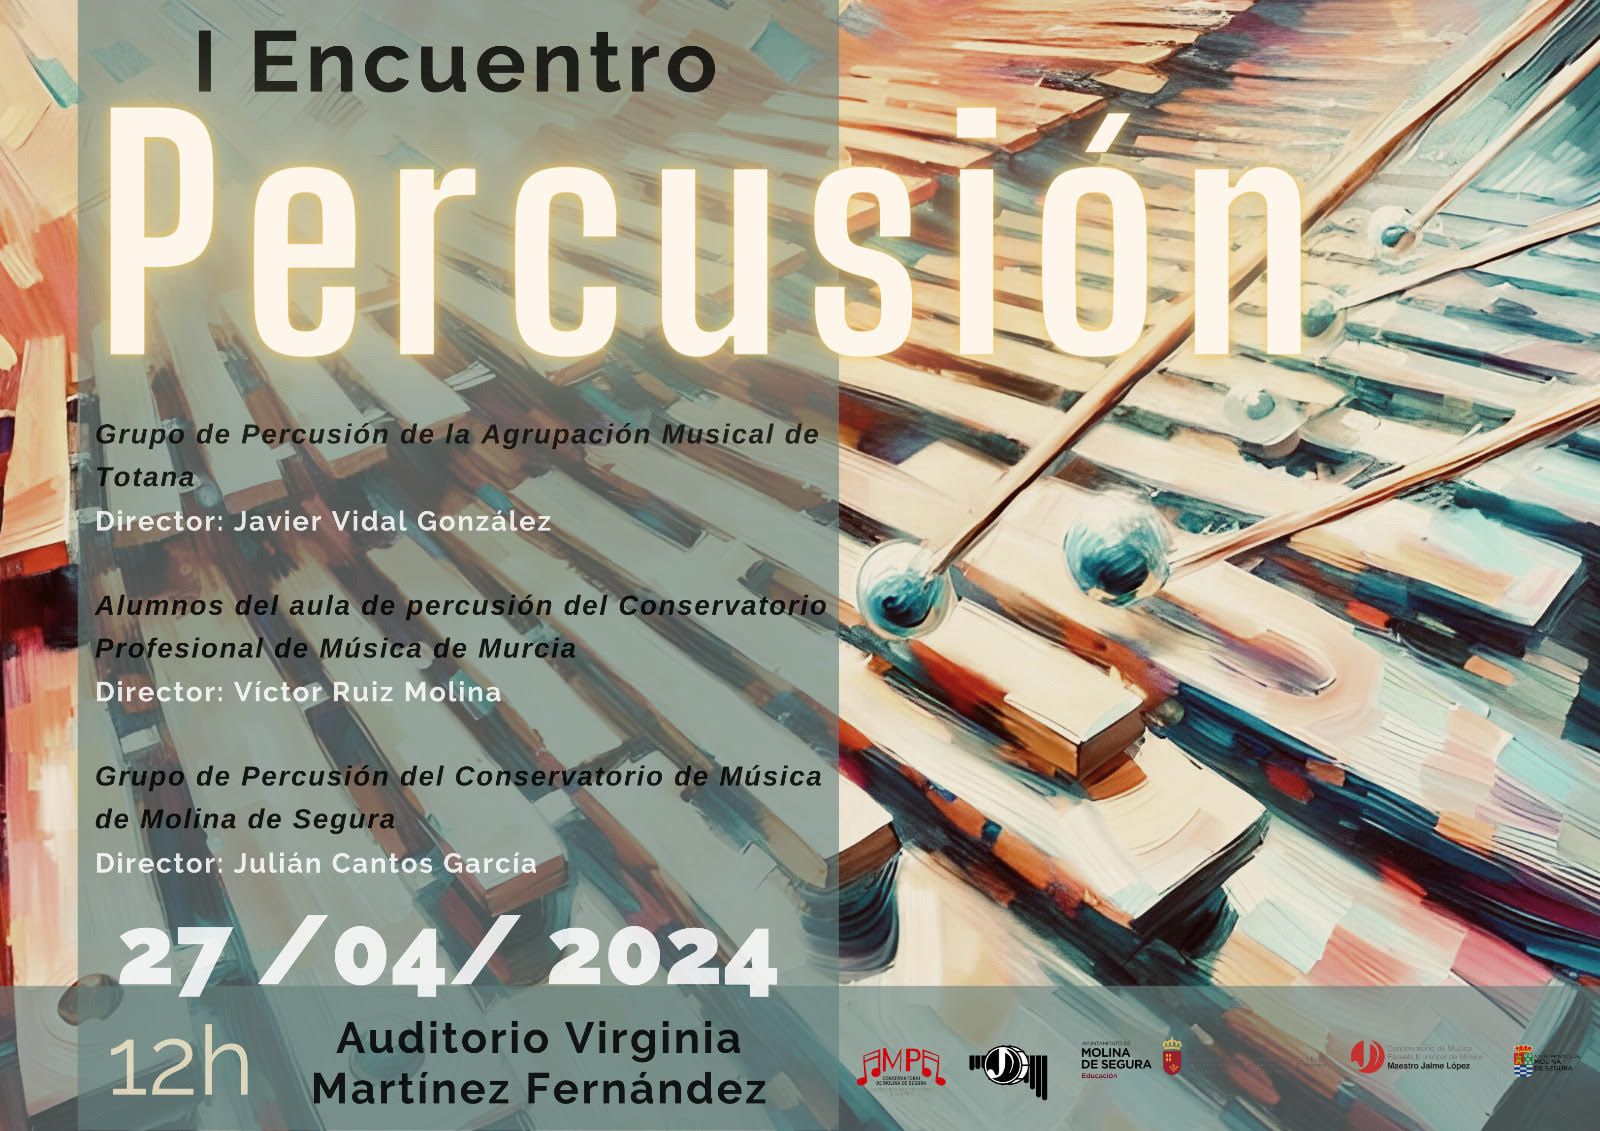 El Conservatorio de Música ‘Maestro Jaime López’ de Molina de Segura organiza el I Encuentro de Percusión el sábado 27 de abril